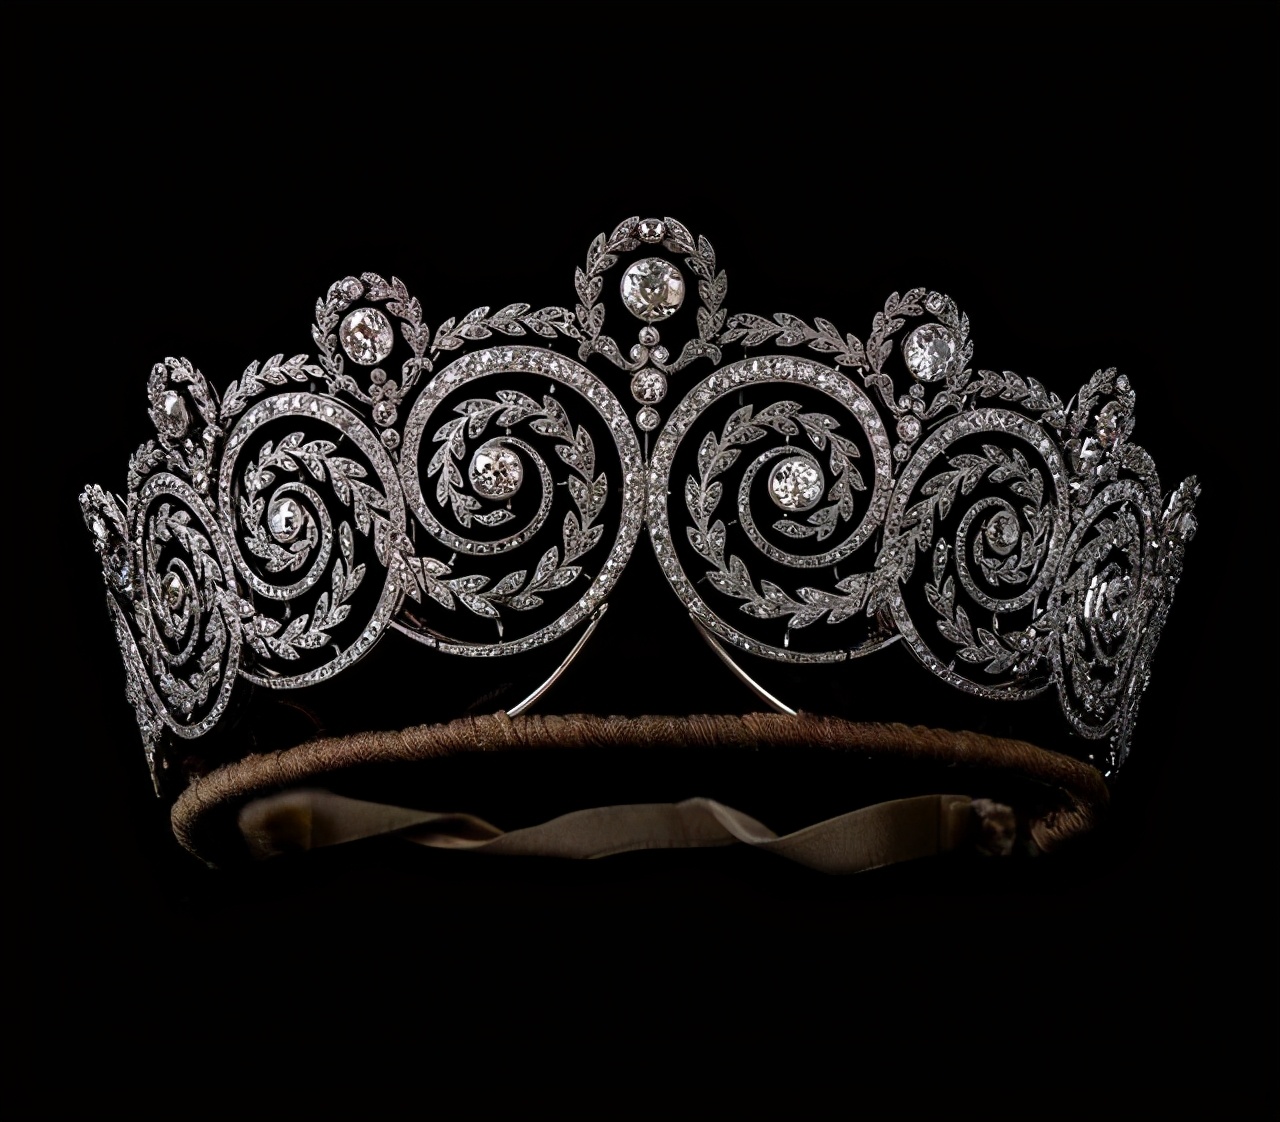 欧洲顶级的钻石皇冠，设计和工艺都很精湛，奢华程度超越你的想象